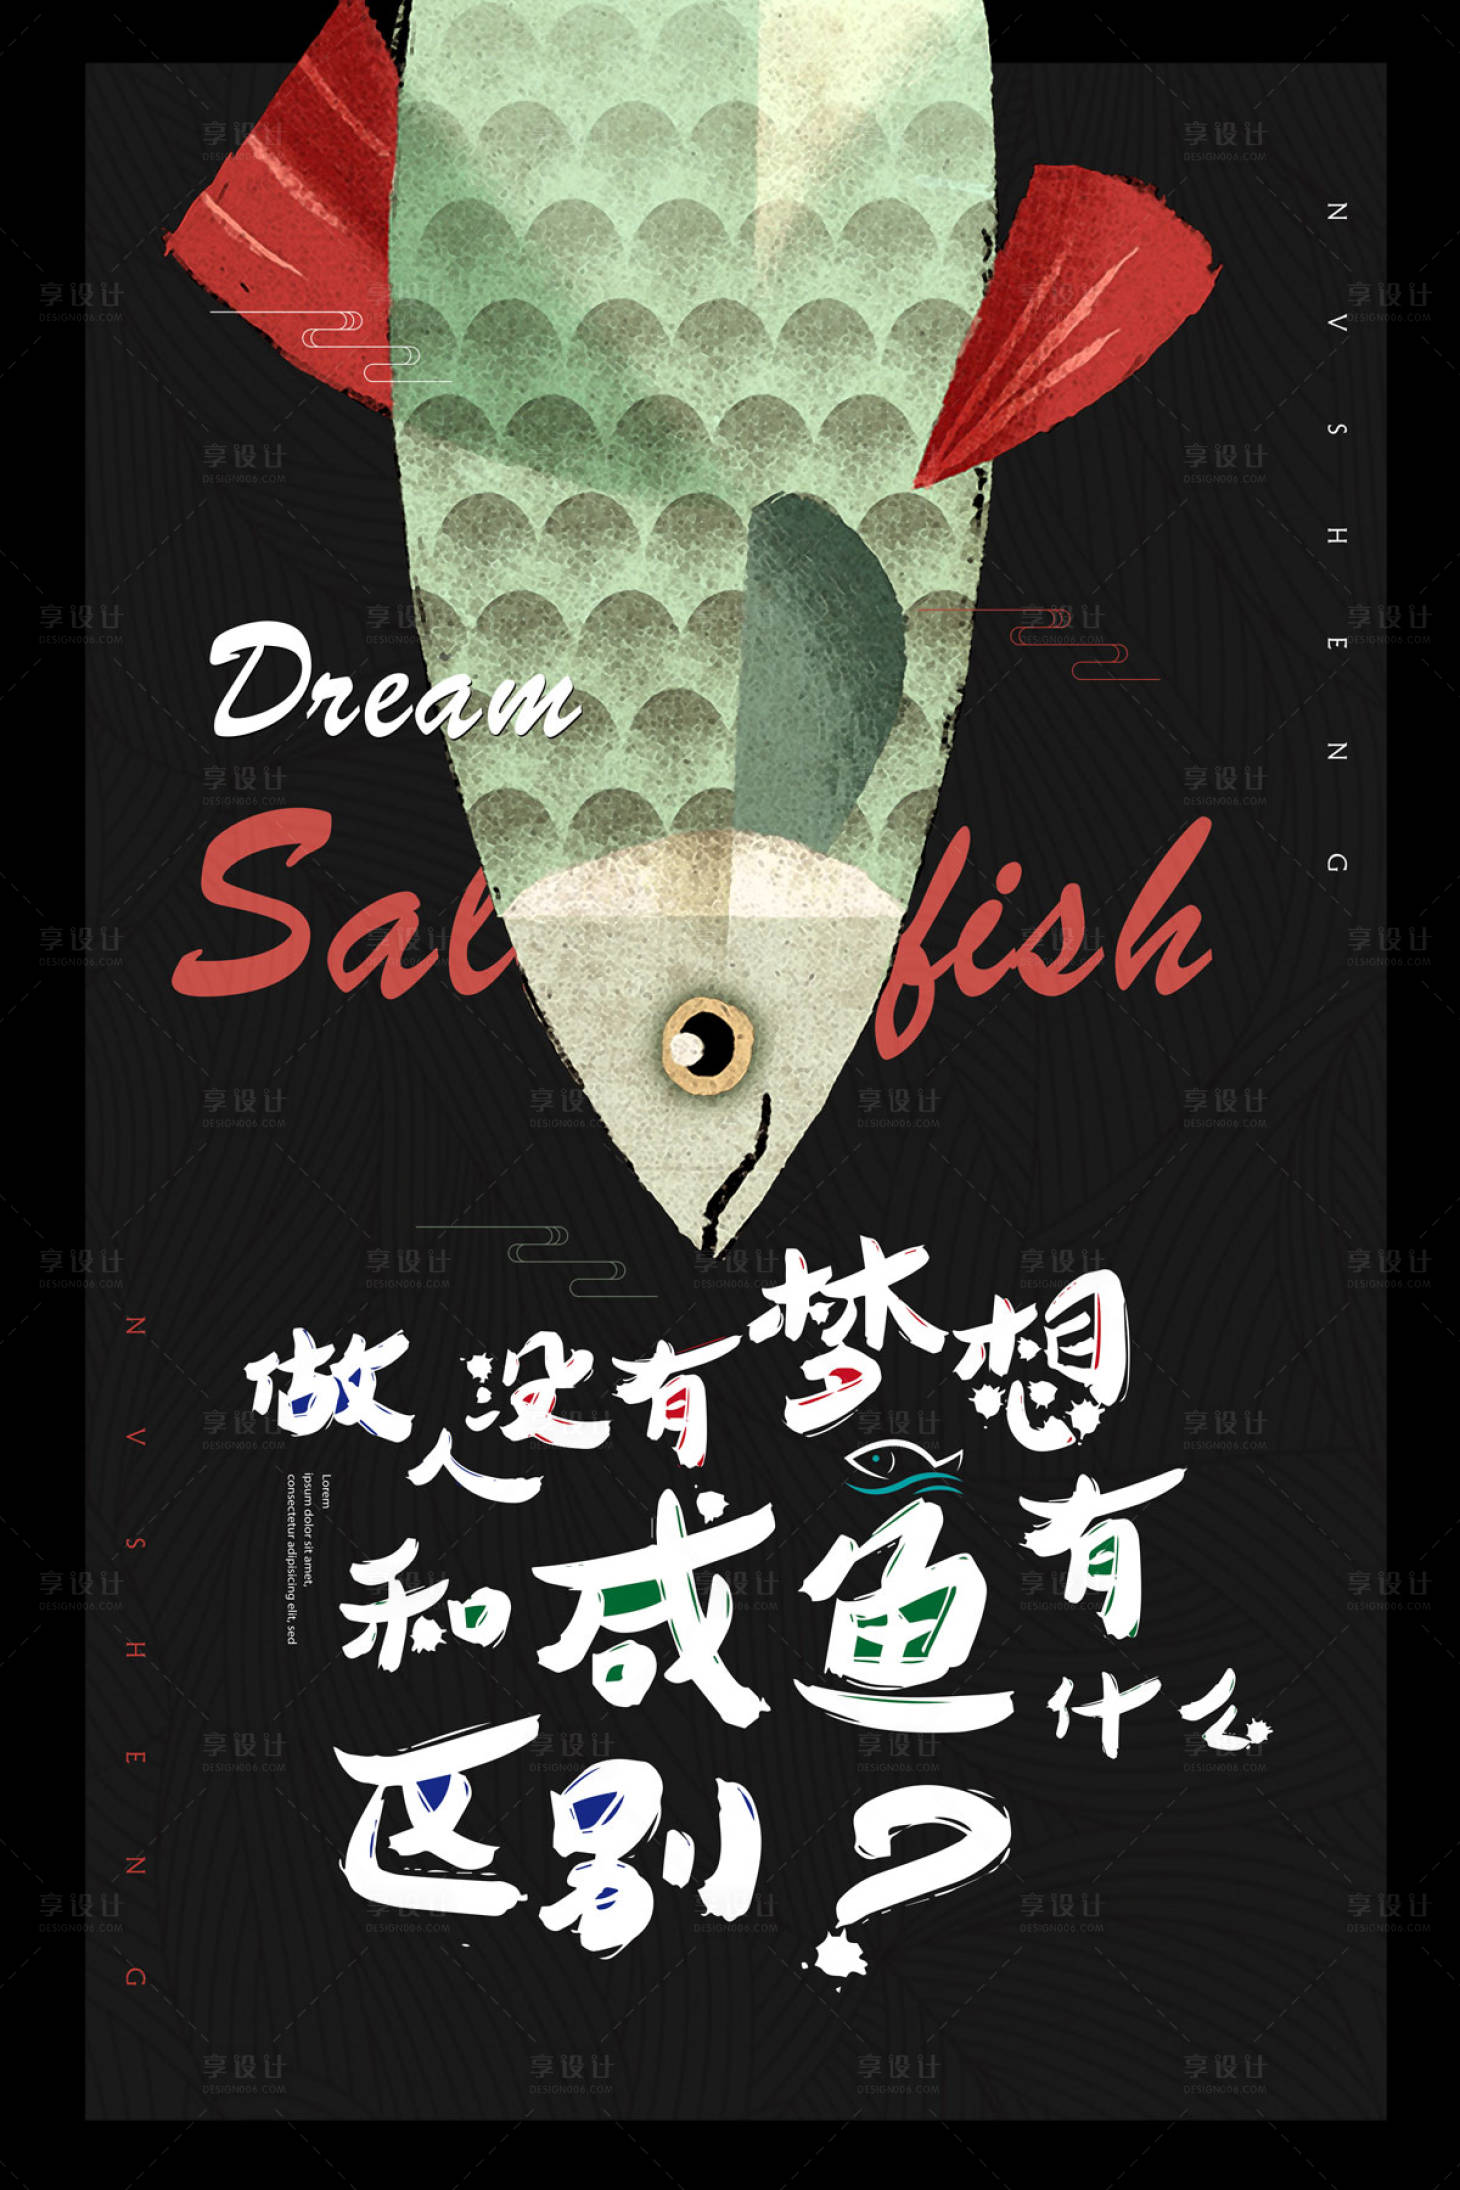 创意手绘梦想咸鱼励志海报绿色色/黑色色psd广告设计